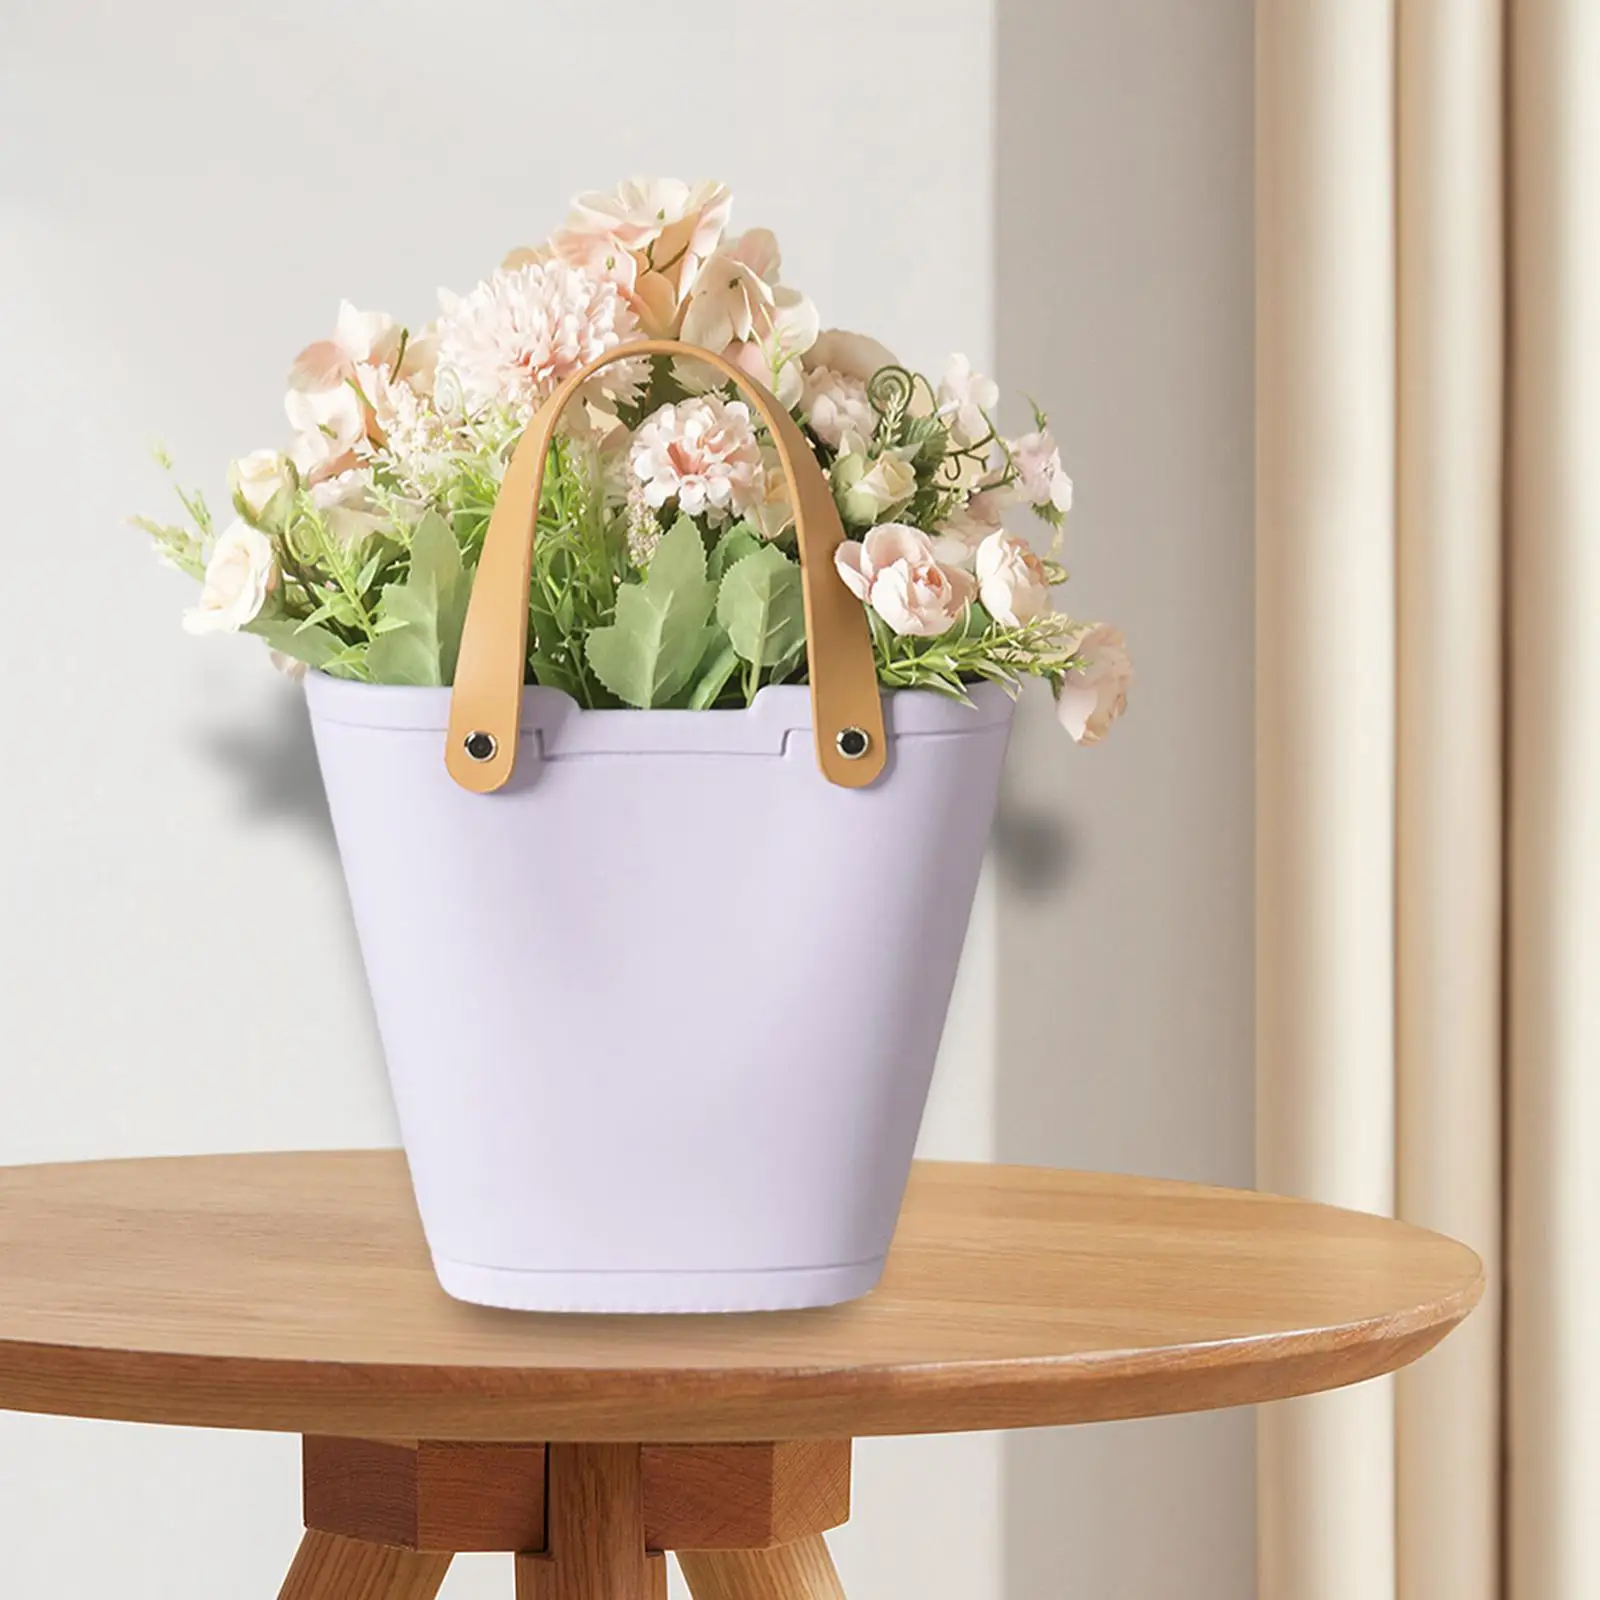 Ceramic Flower Vase Decorative Purse Vase for Flowers Bag Vase Unique Flower Vase for Dinning Shelf Table Kitchen Garden